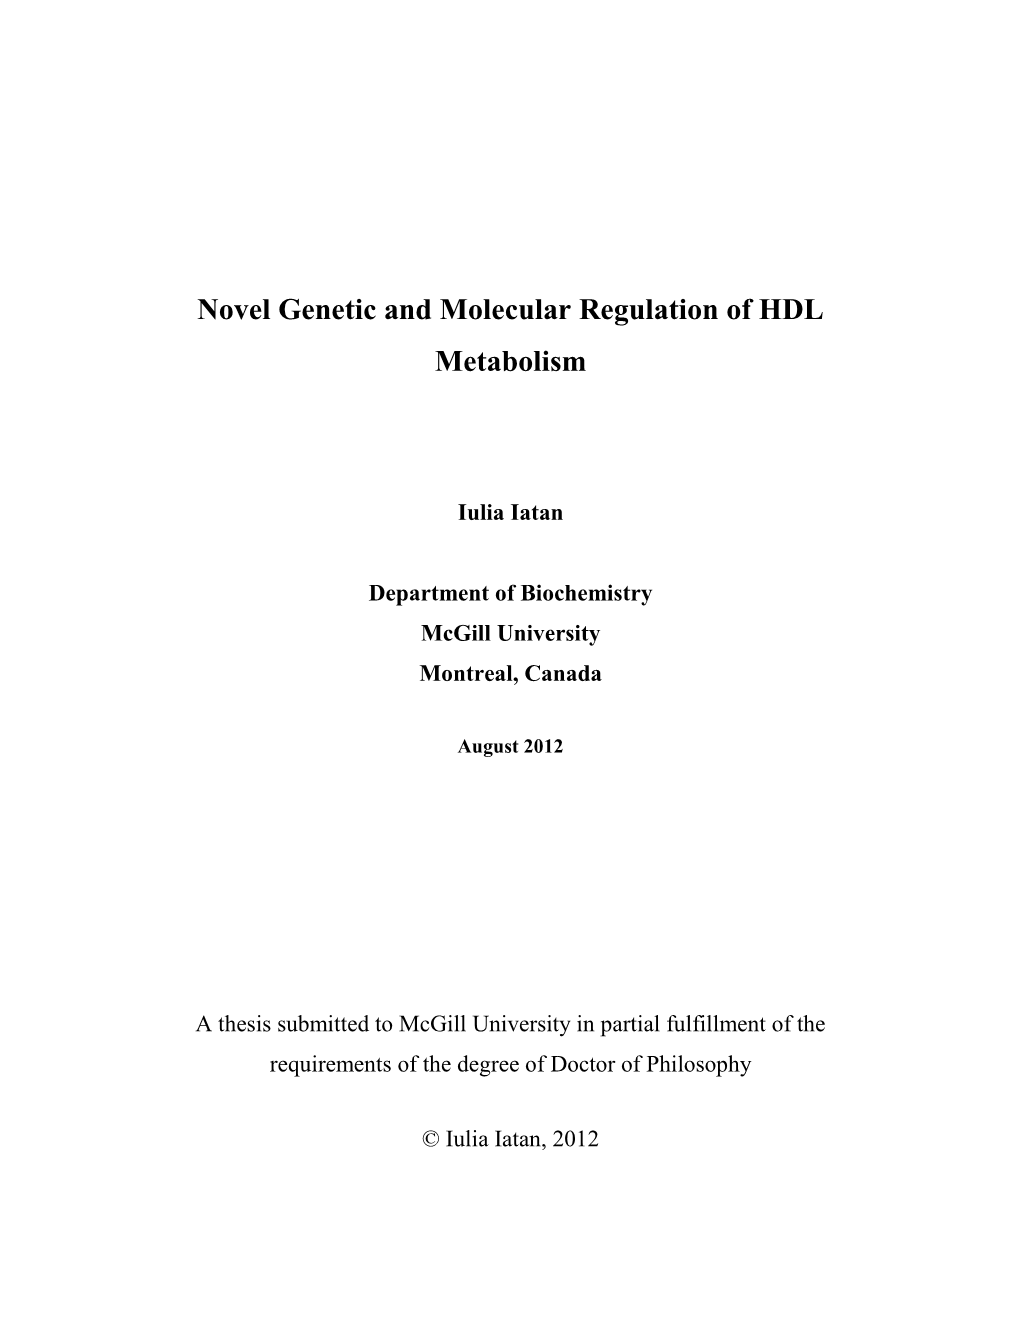 Novel Genetic and Molecular Regulation of HDL Metabolism